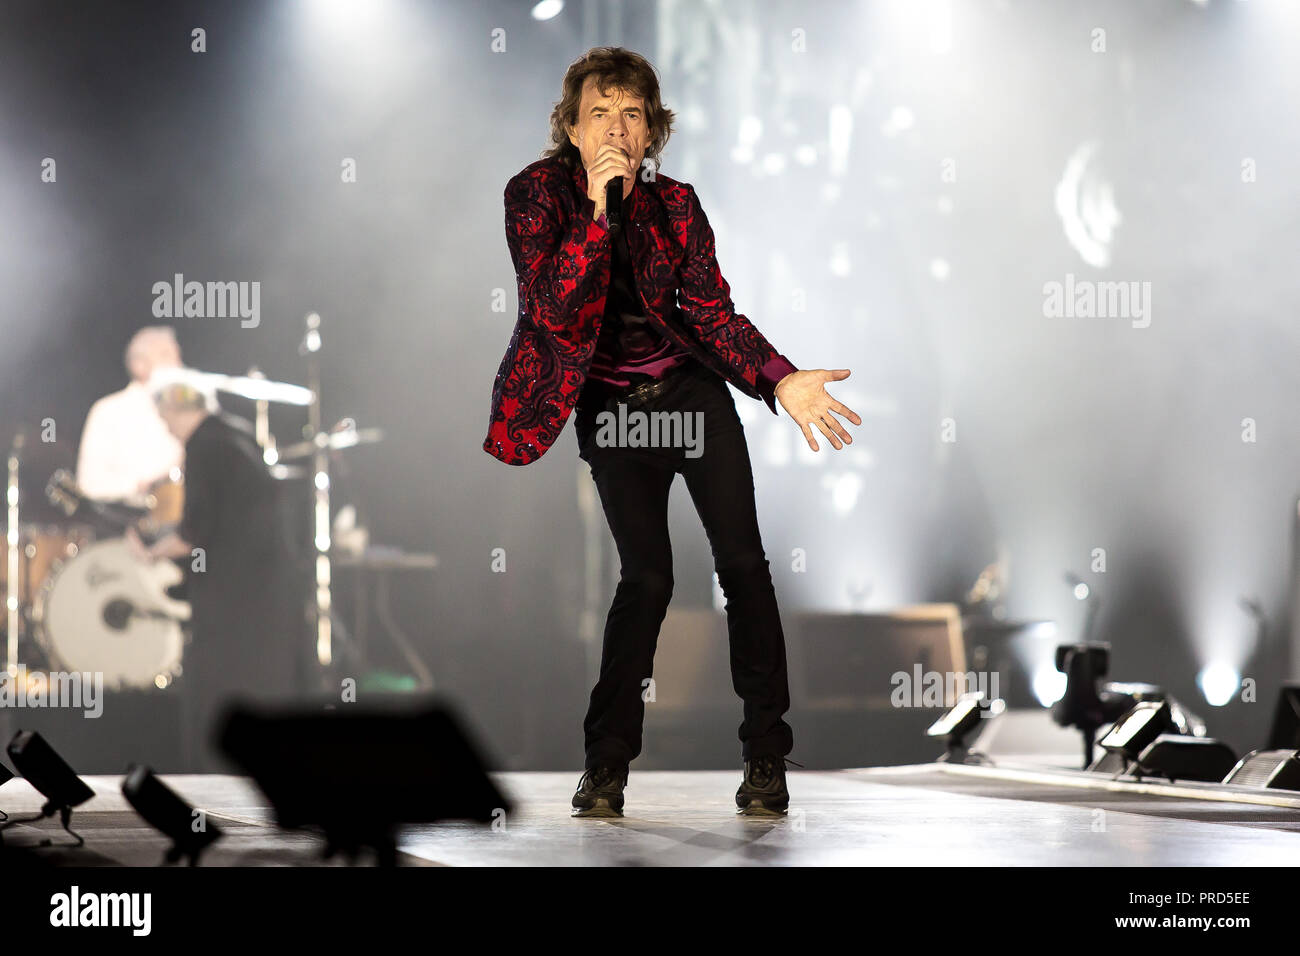 Danemark, copenhague - le 3 octobre 2017.Les Rolling Stones, le légendaire  groupe de rock anglais, effectue un concert live à Telia Parken de  Copenhague. Ici, chanteuse et compositrice Mick Jagger est vu